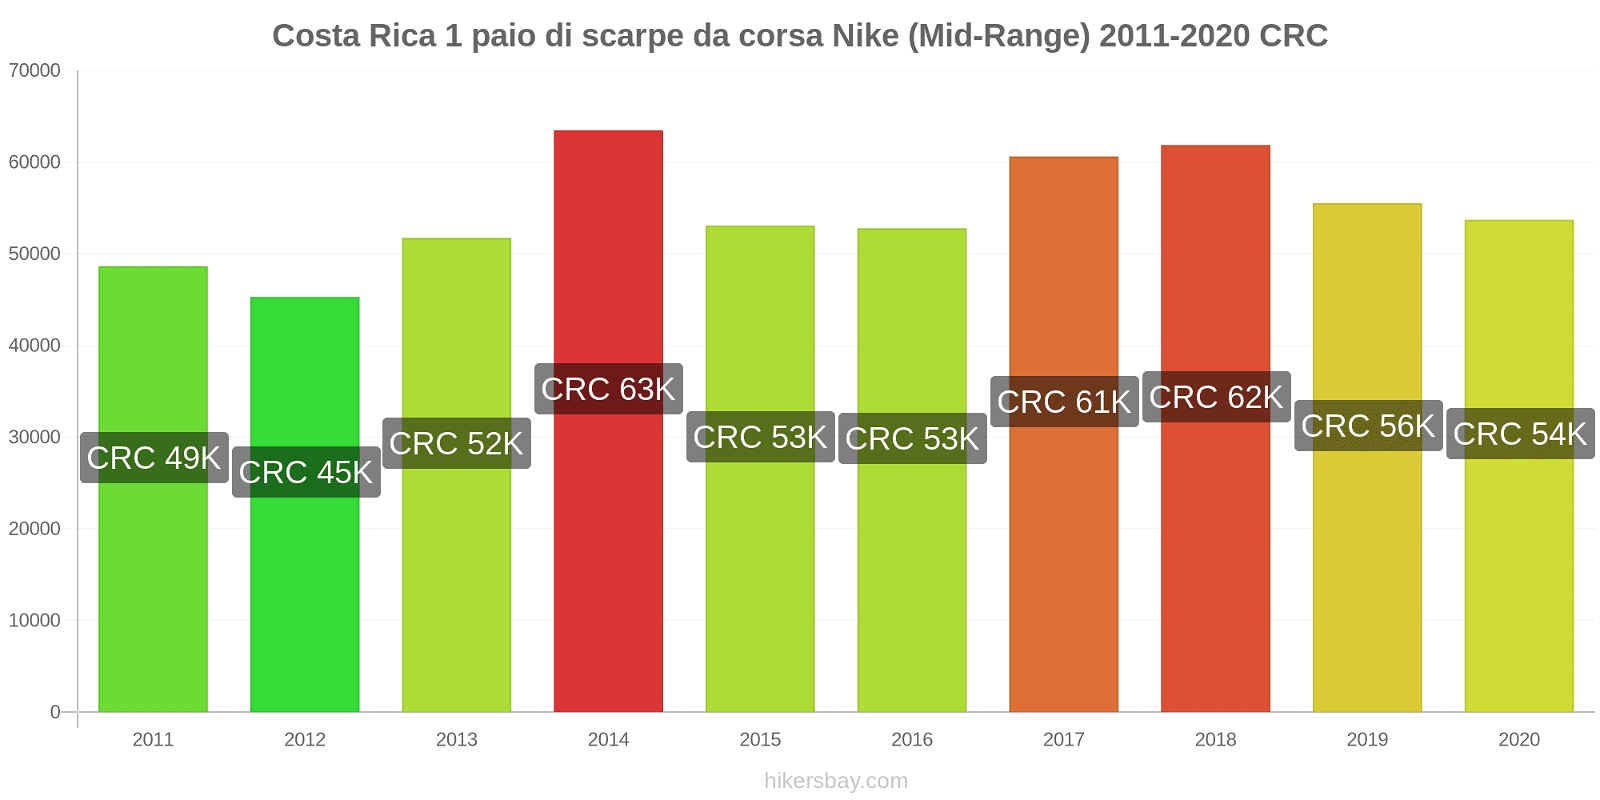 Costa Rica variazioni di prezzo 1 paio di scarpe da corsa Nike (simile) hikersbay.com